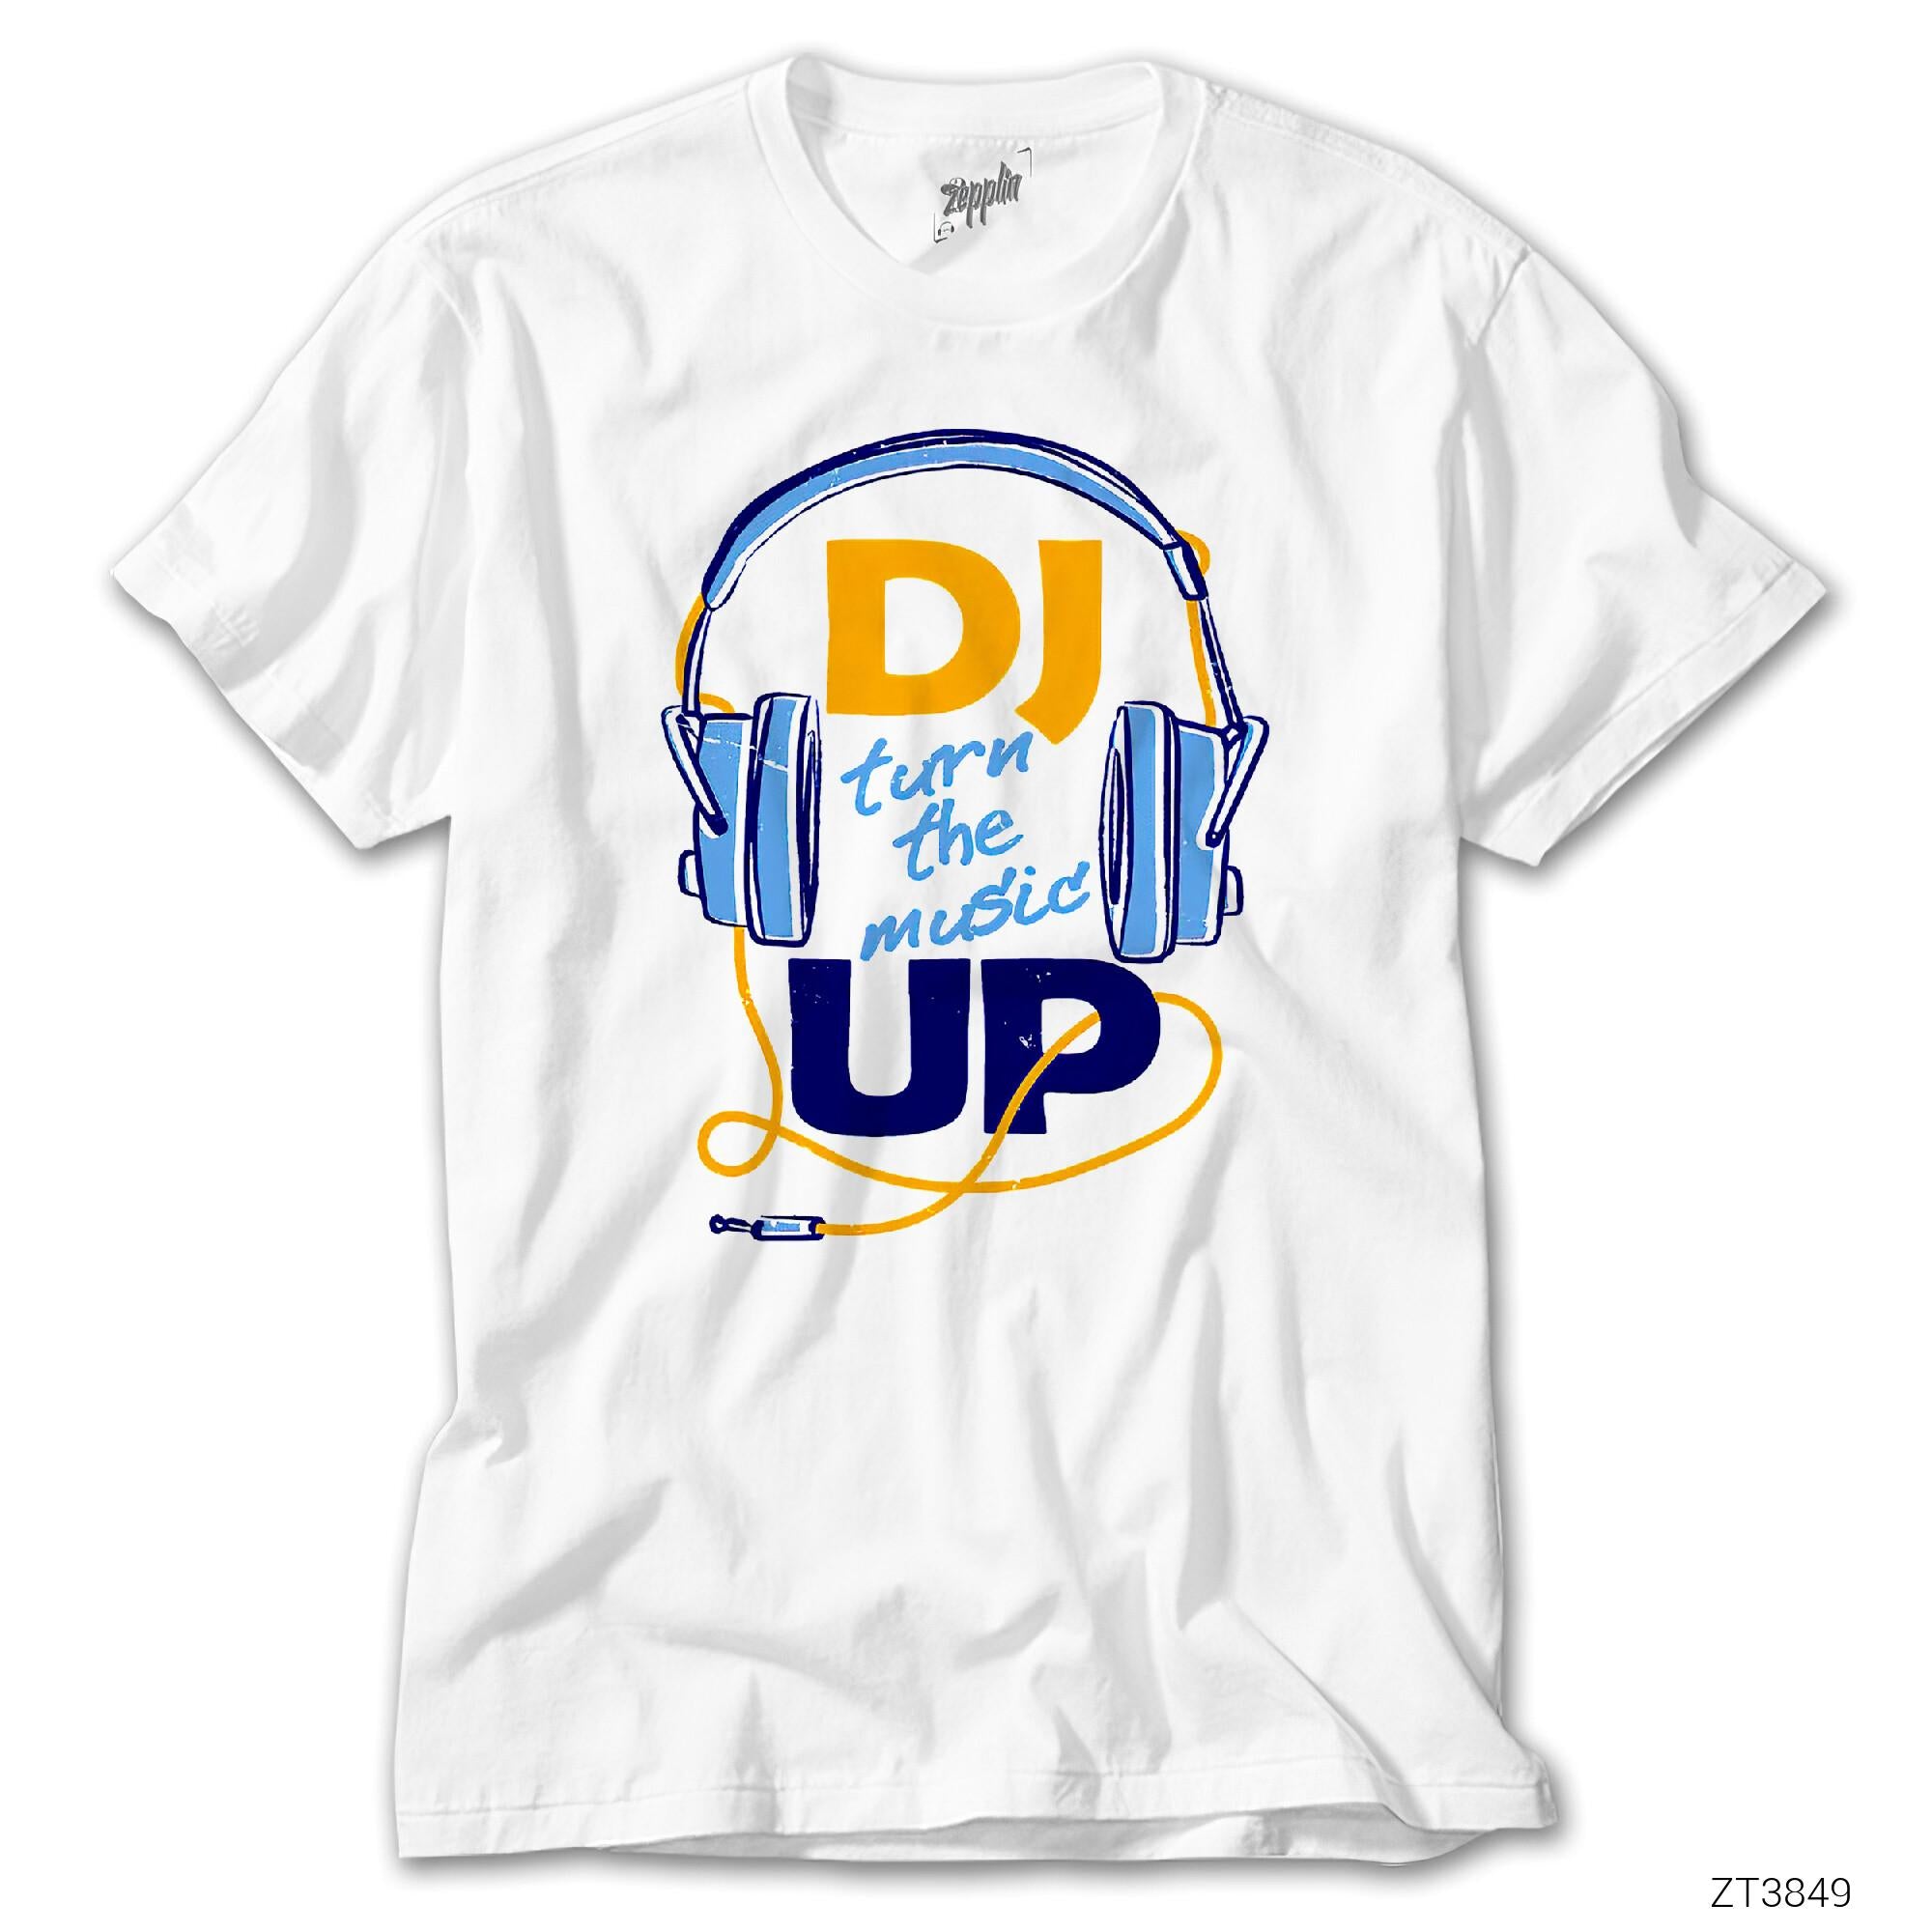 Turn it up! Beyaz Tişört